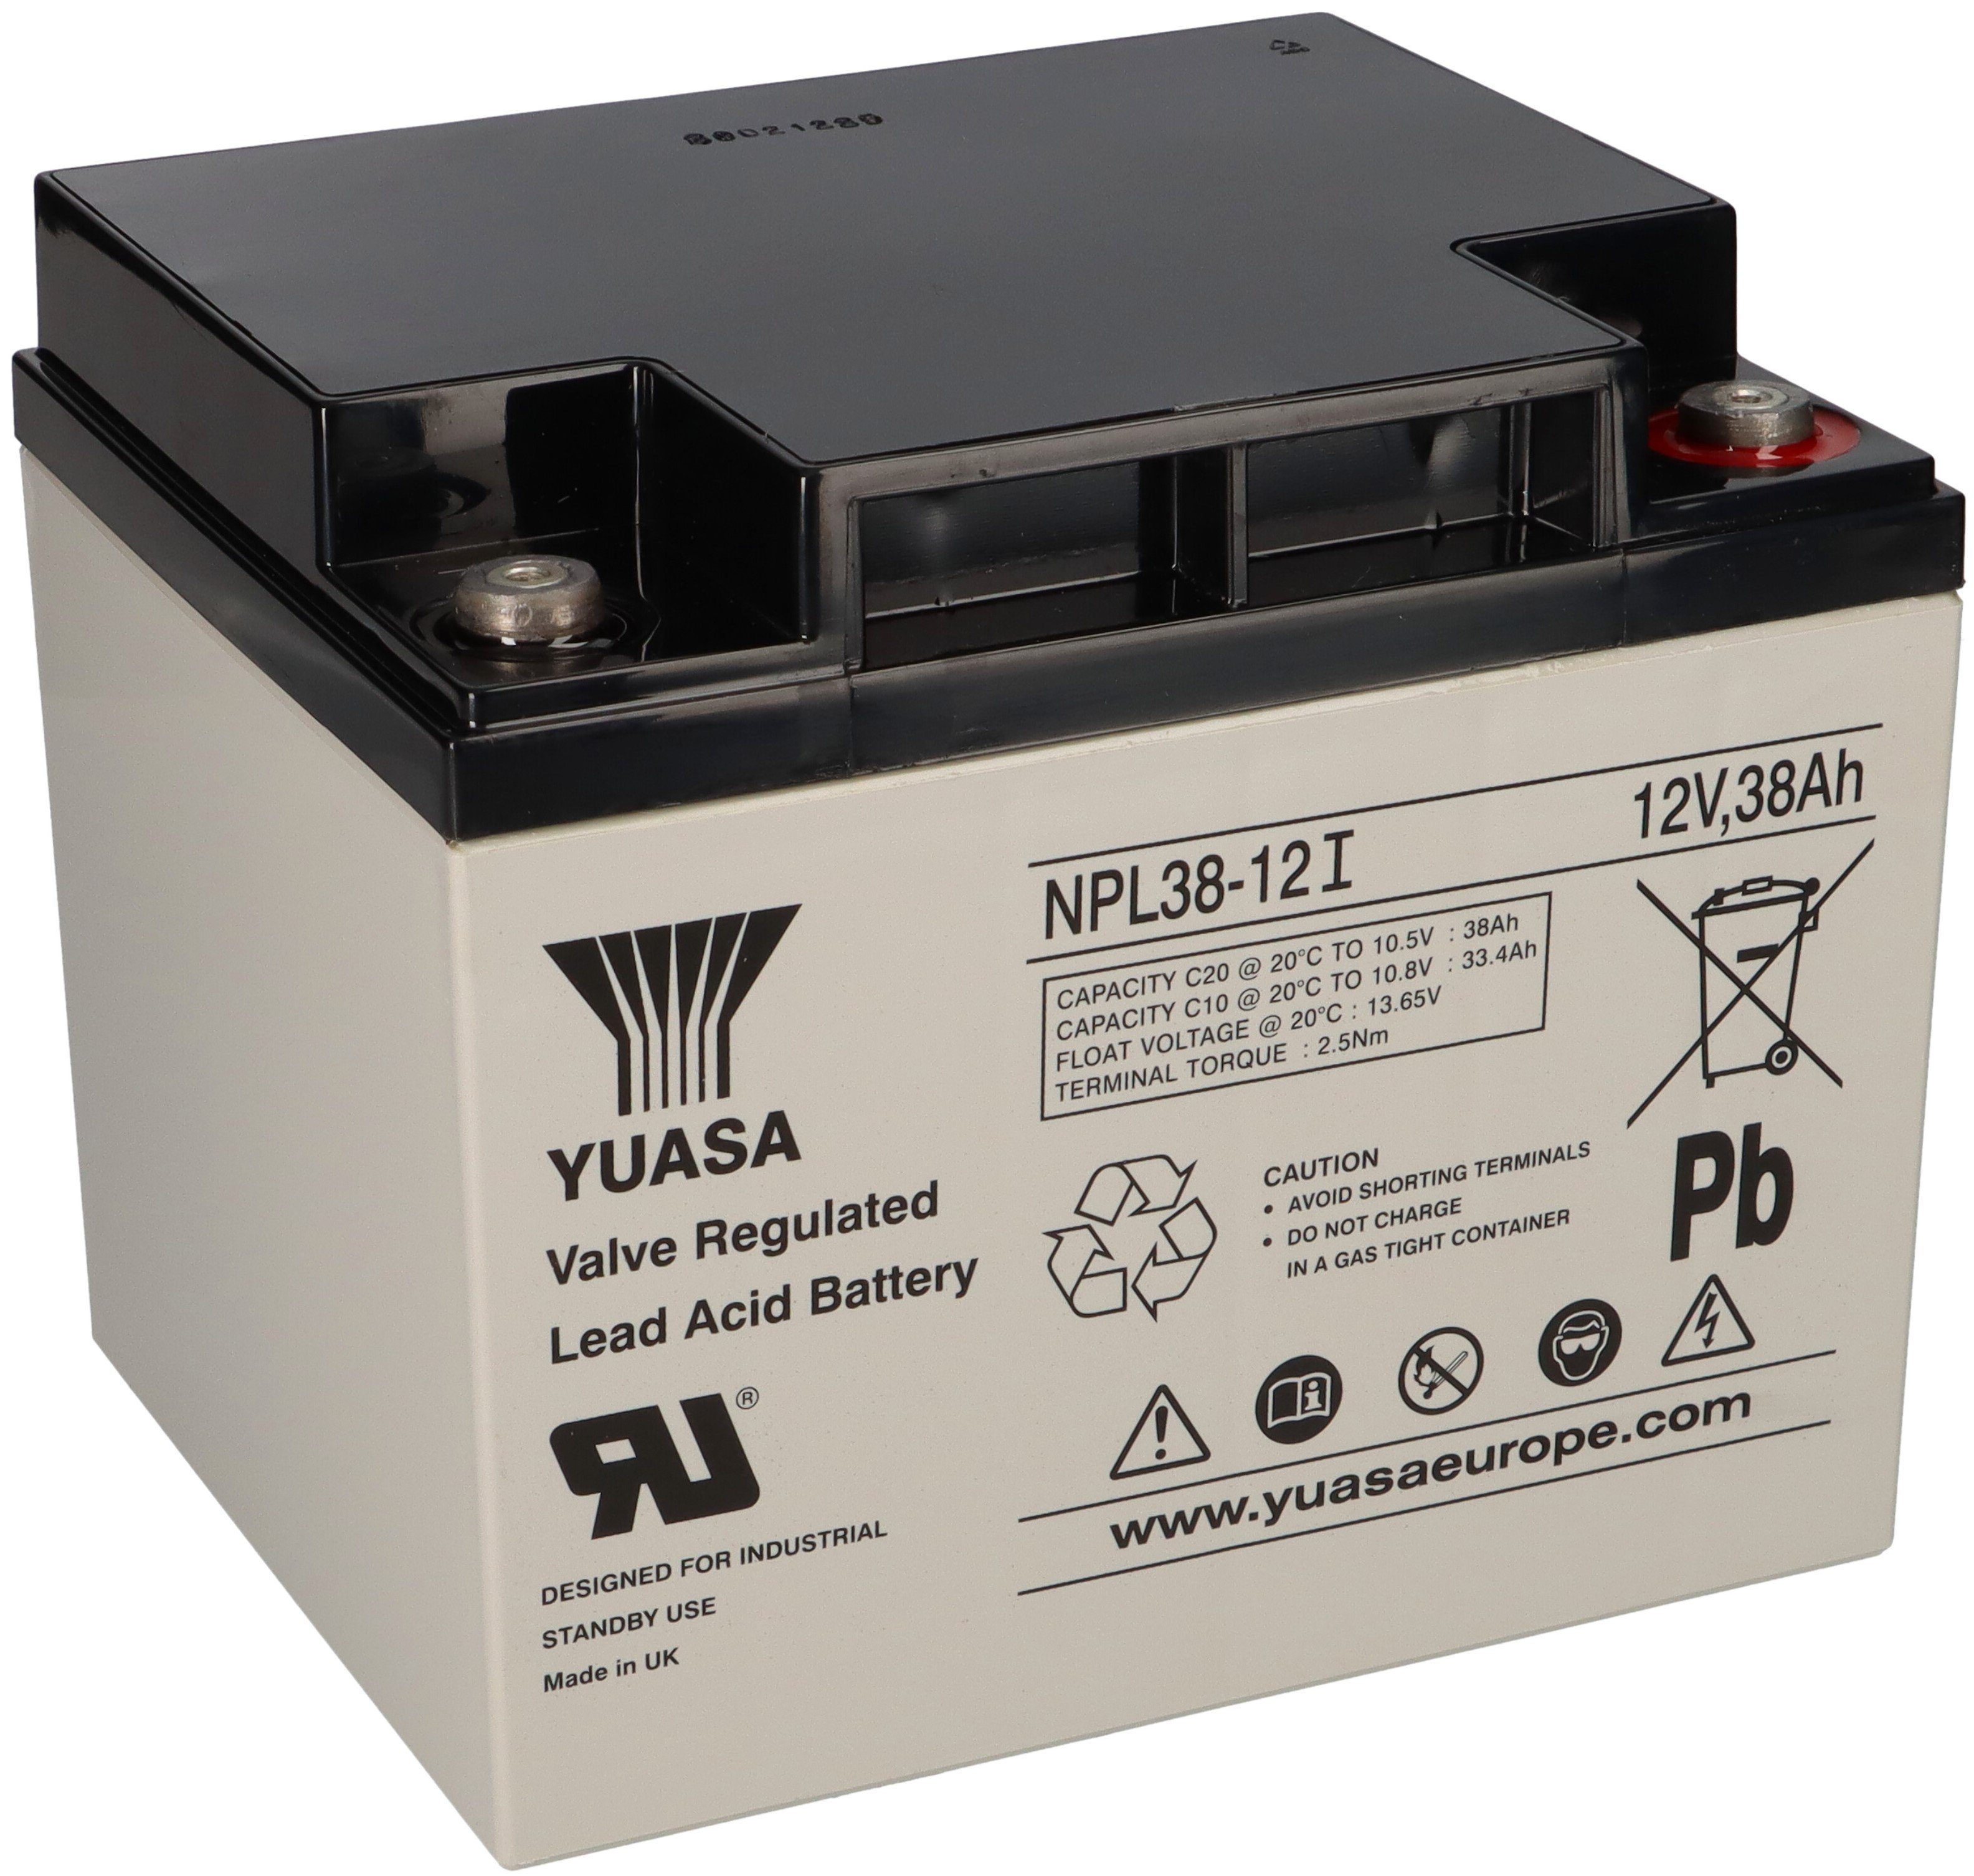 Yuasa Yuasa Blei-Akku NPL38-12I Pb 12V / 38Ah 10-12 Jahresbatterie